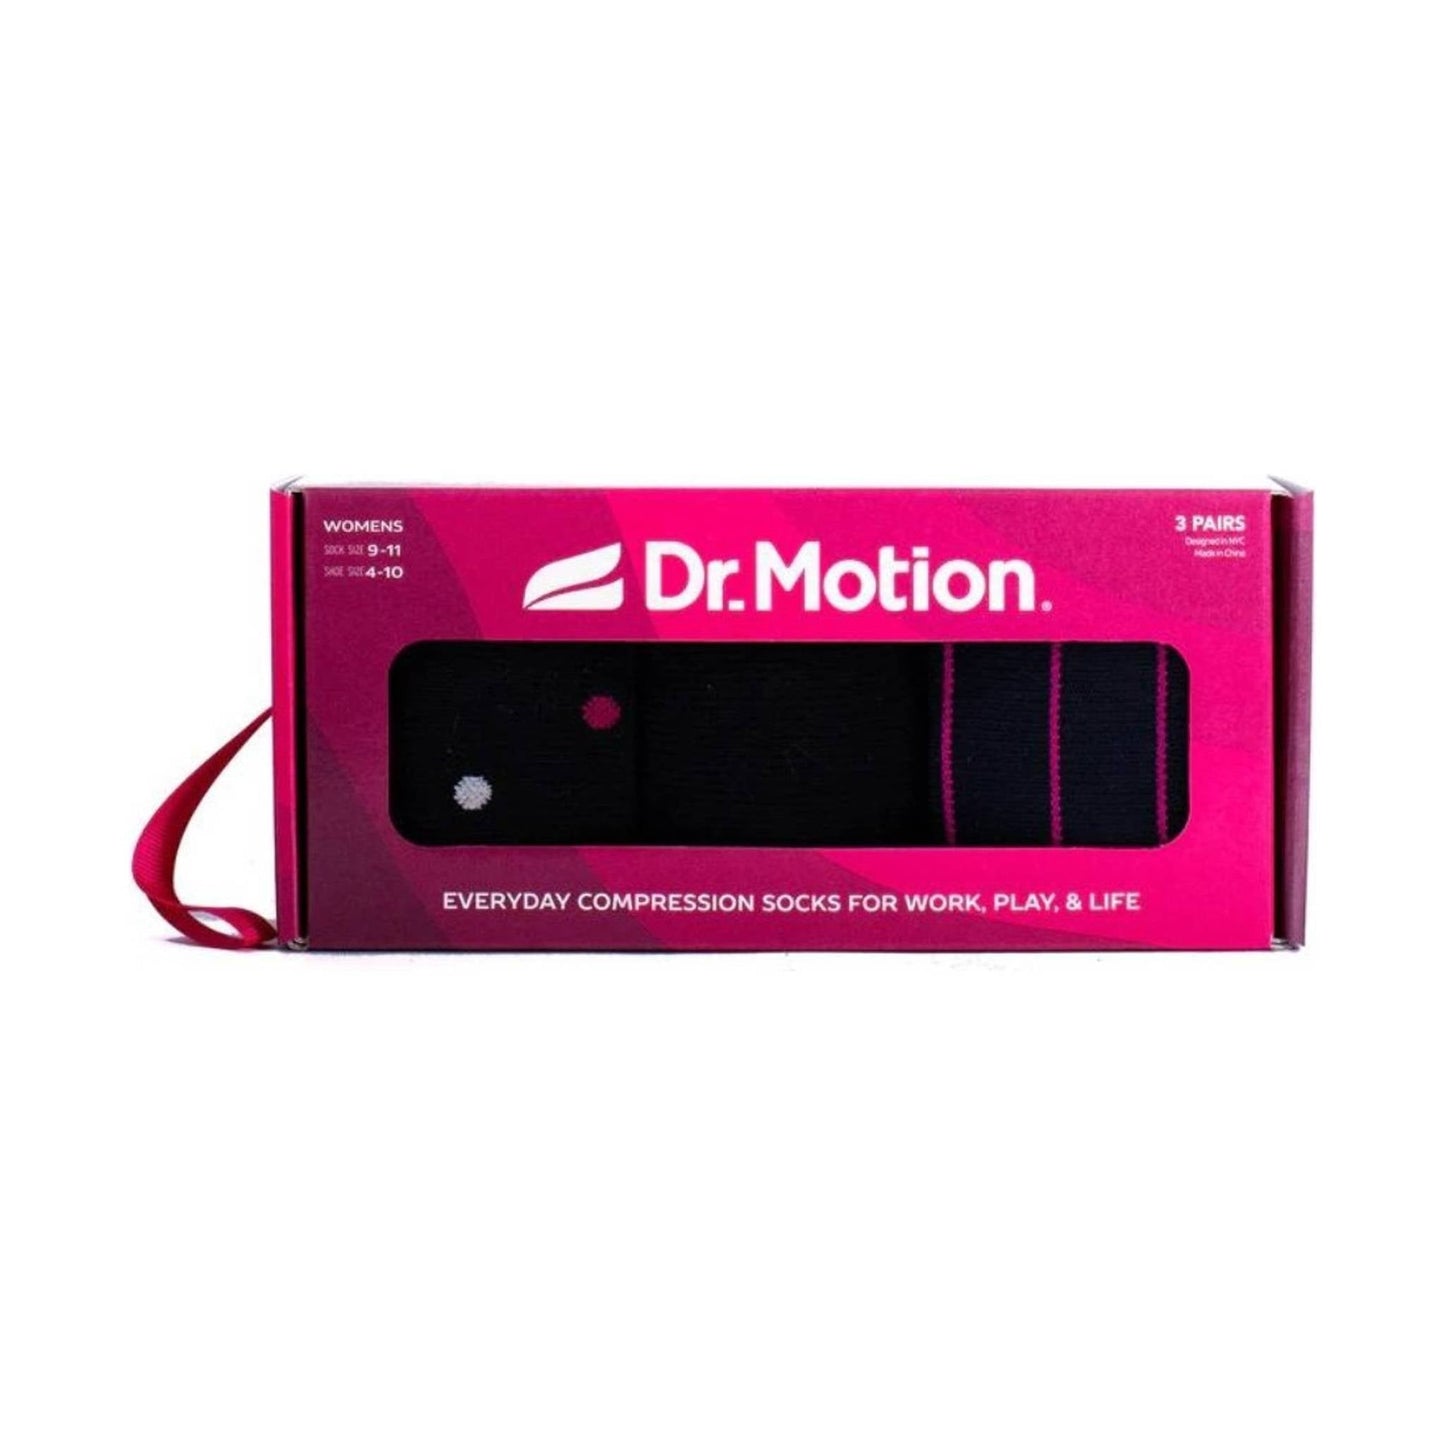 Dr. Motion Women's Compression Socks 3-Pack